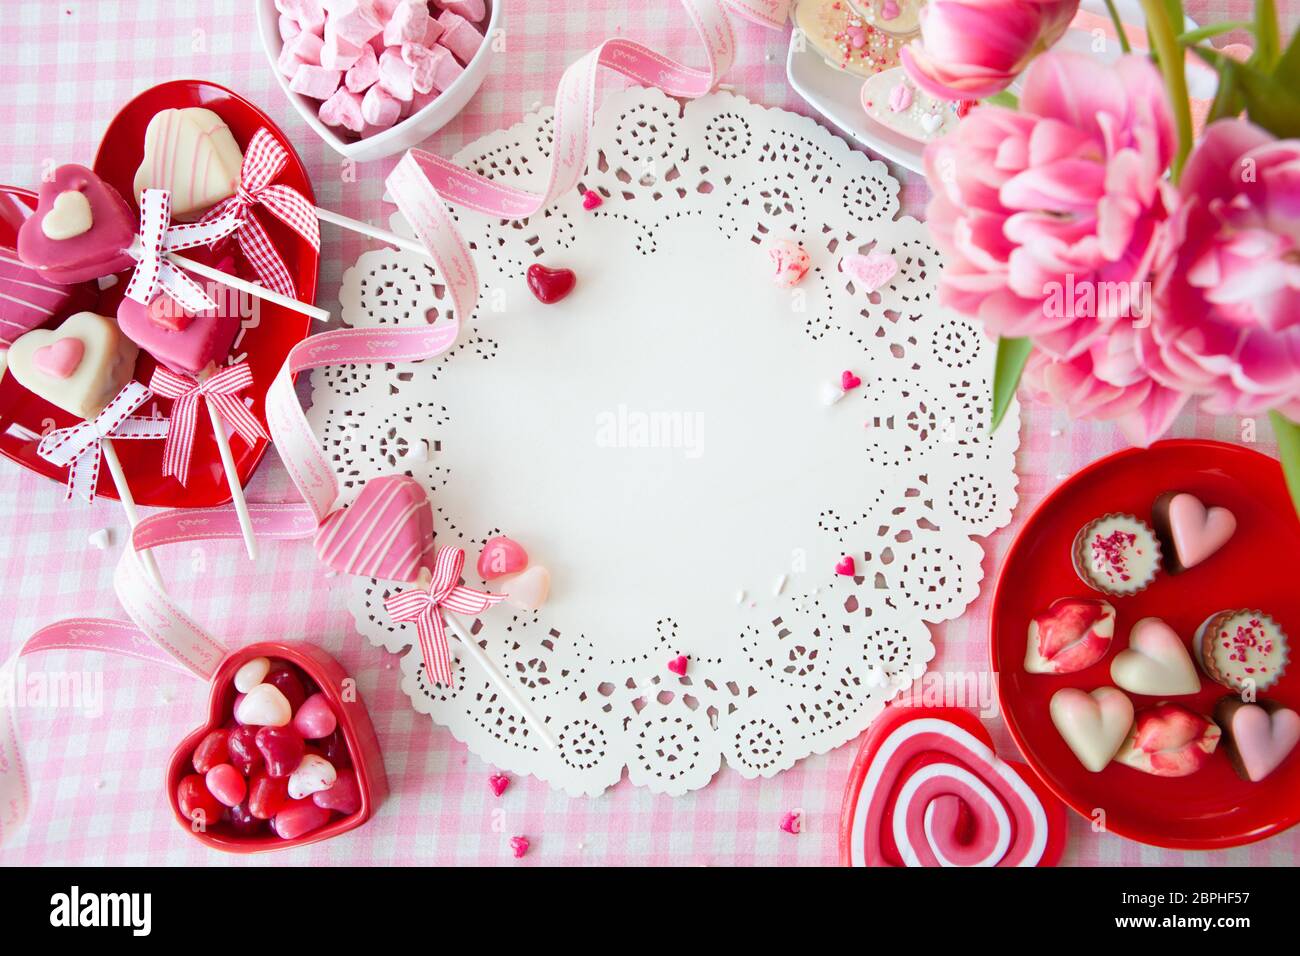 Leckere Süßigkeiten in Form eines Herzens und frisches rosa Tulpen Stockfoto